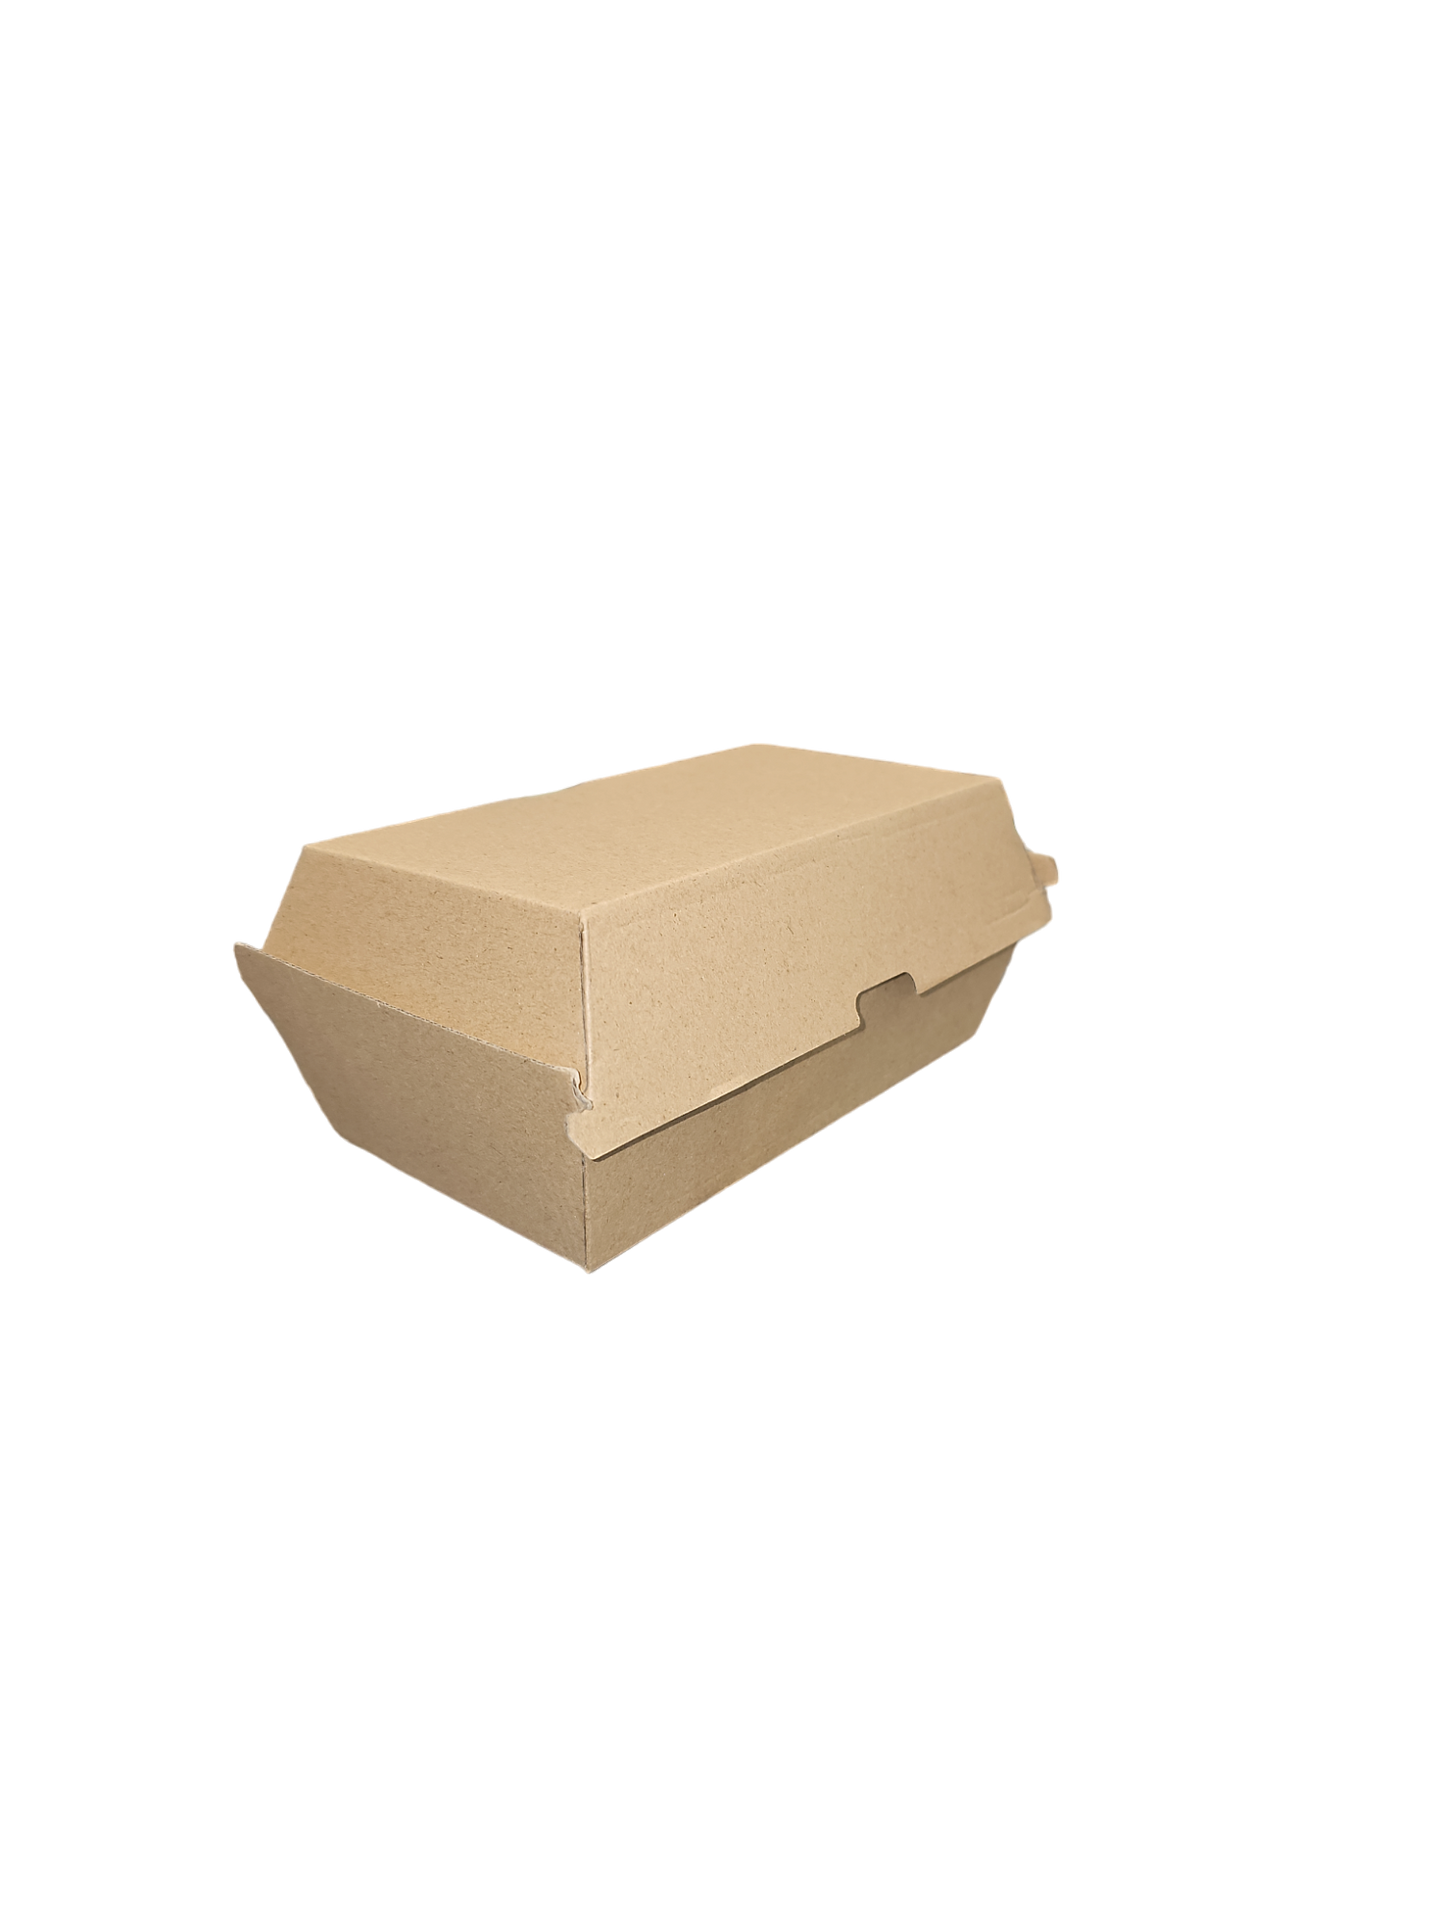 BB-R Snack box (197x113x80mm) 200pcs